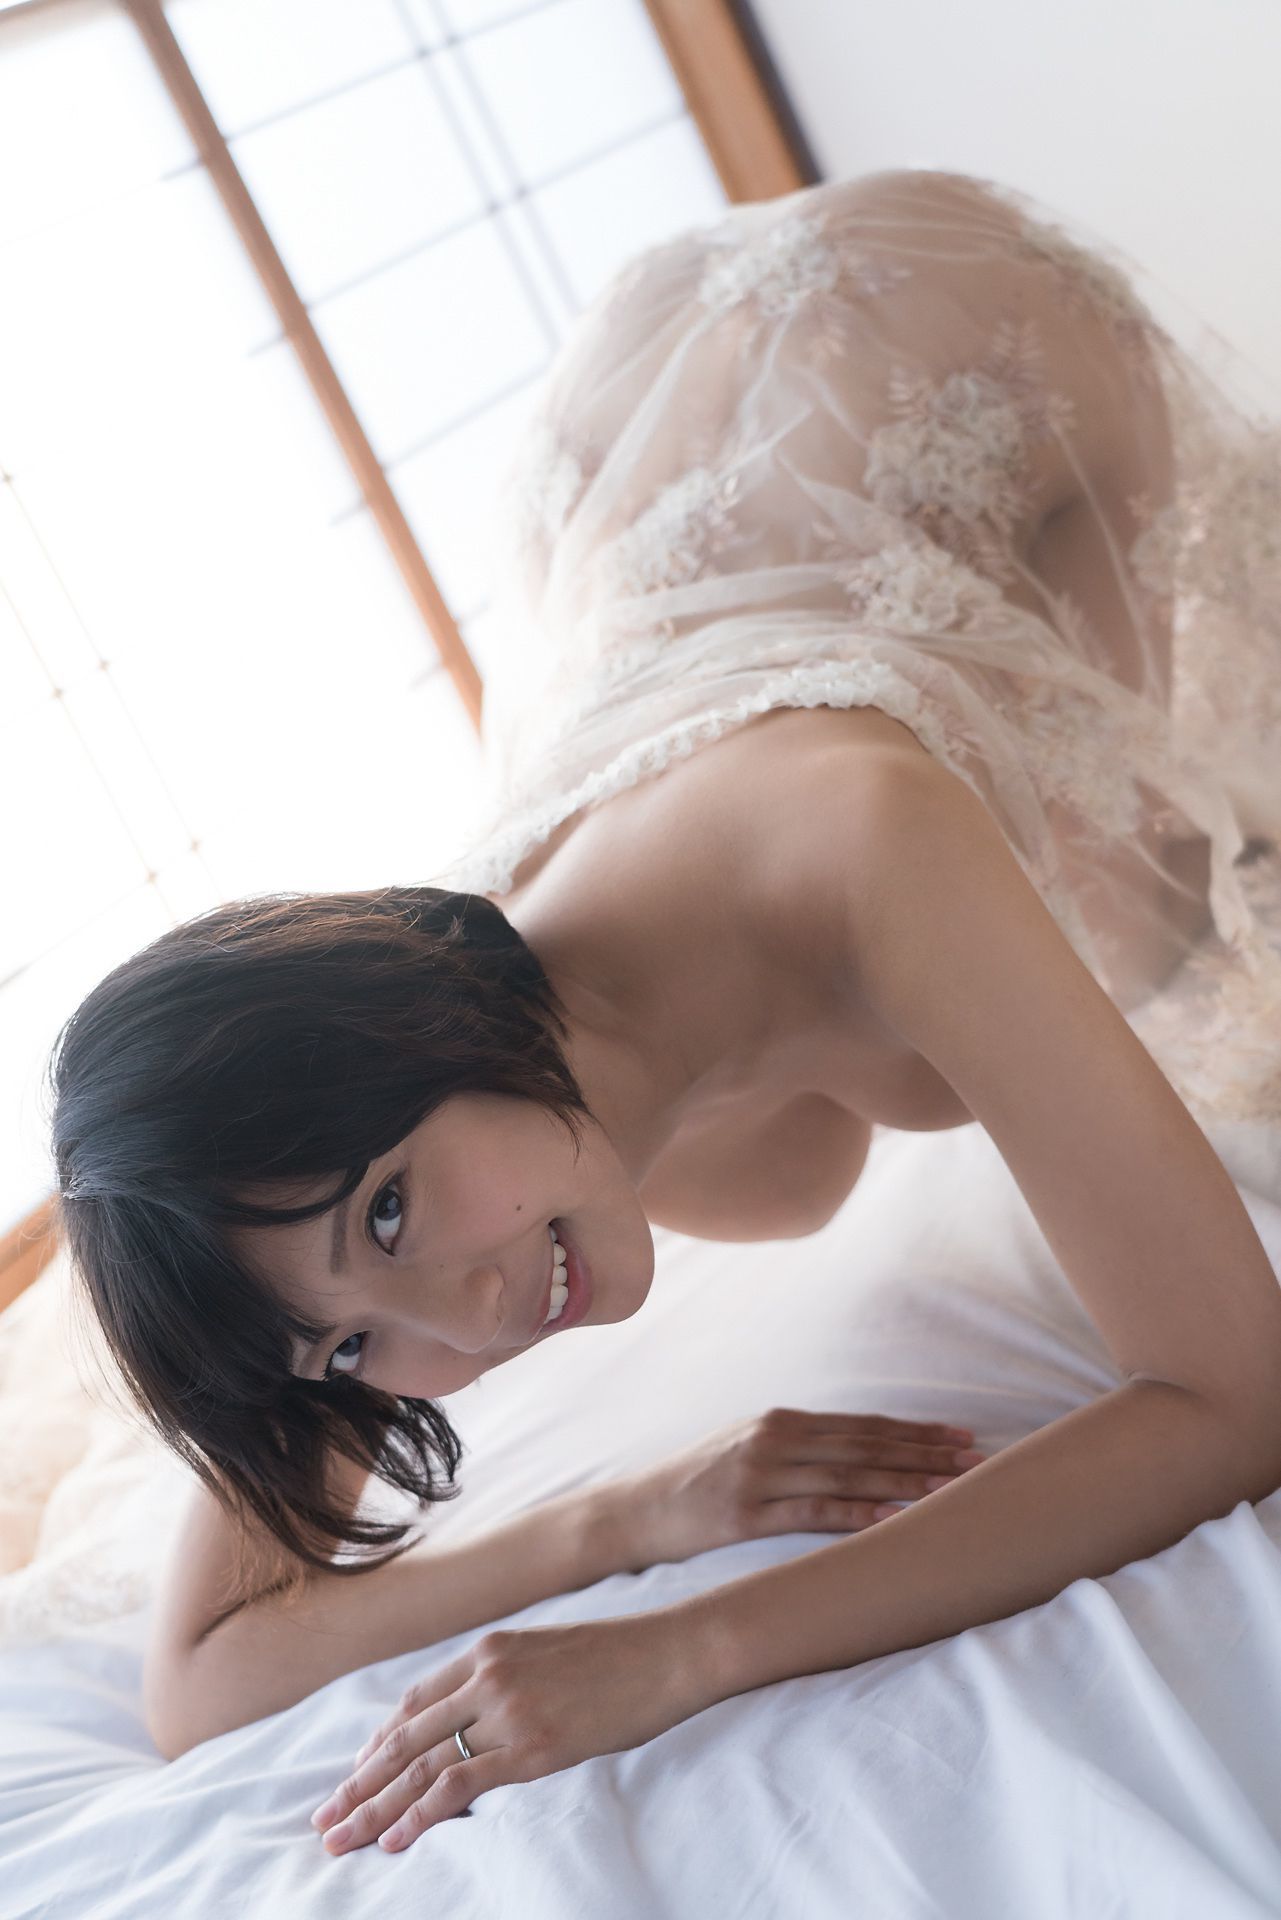 [Minisuka.tv] 麻倉まりな Marina Asakura - 蕾丝人体诱惑巨乳-第20张美女图片